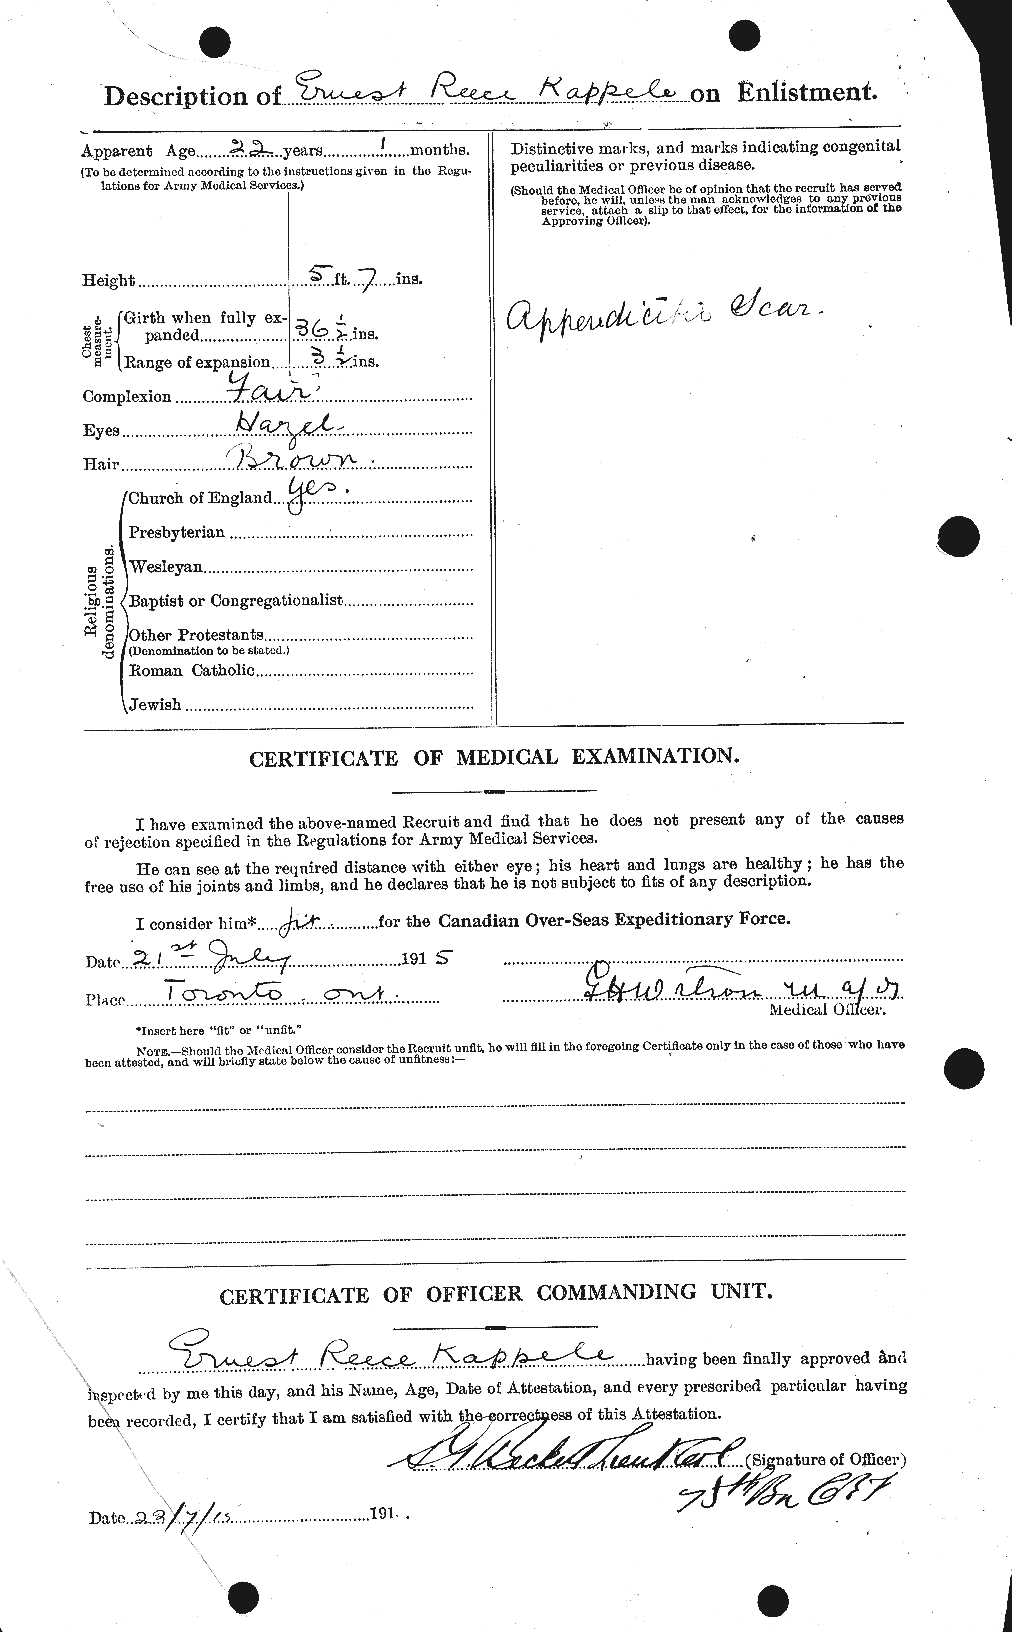 Dossiers du Personnel de la Première Guerre mondiale - CEC 423986b